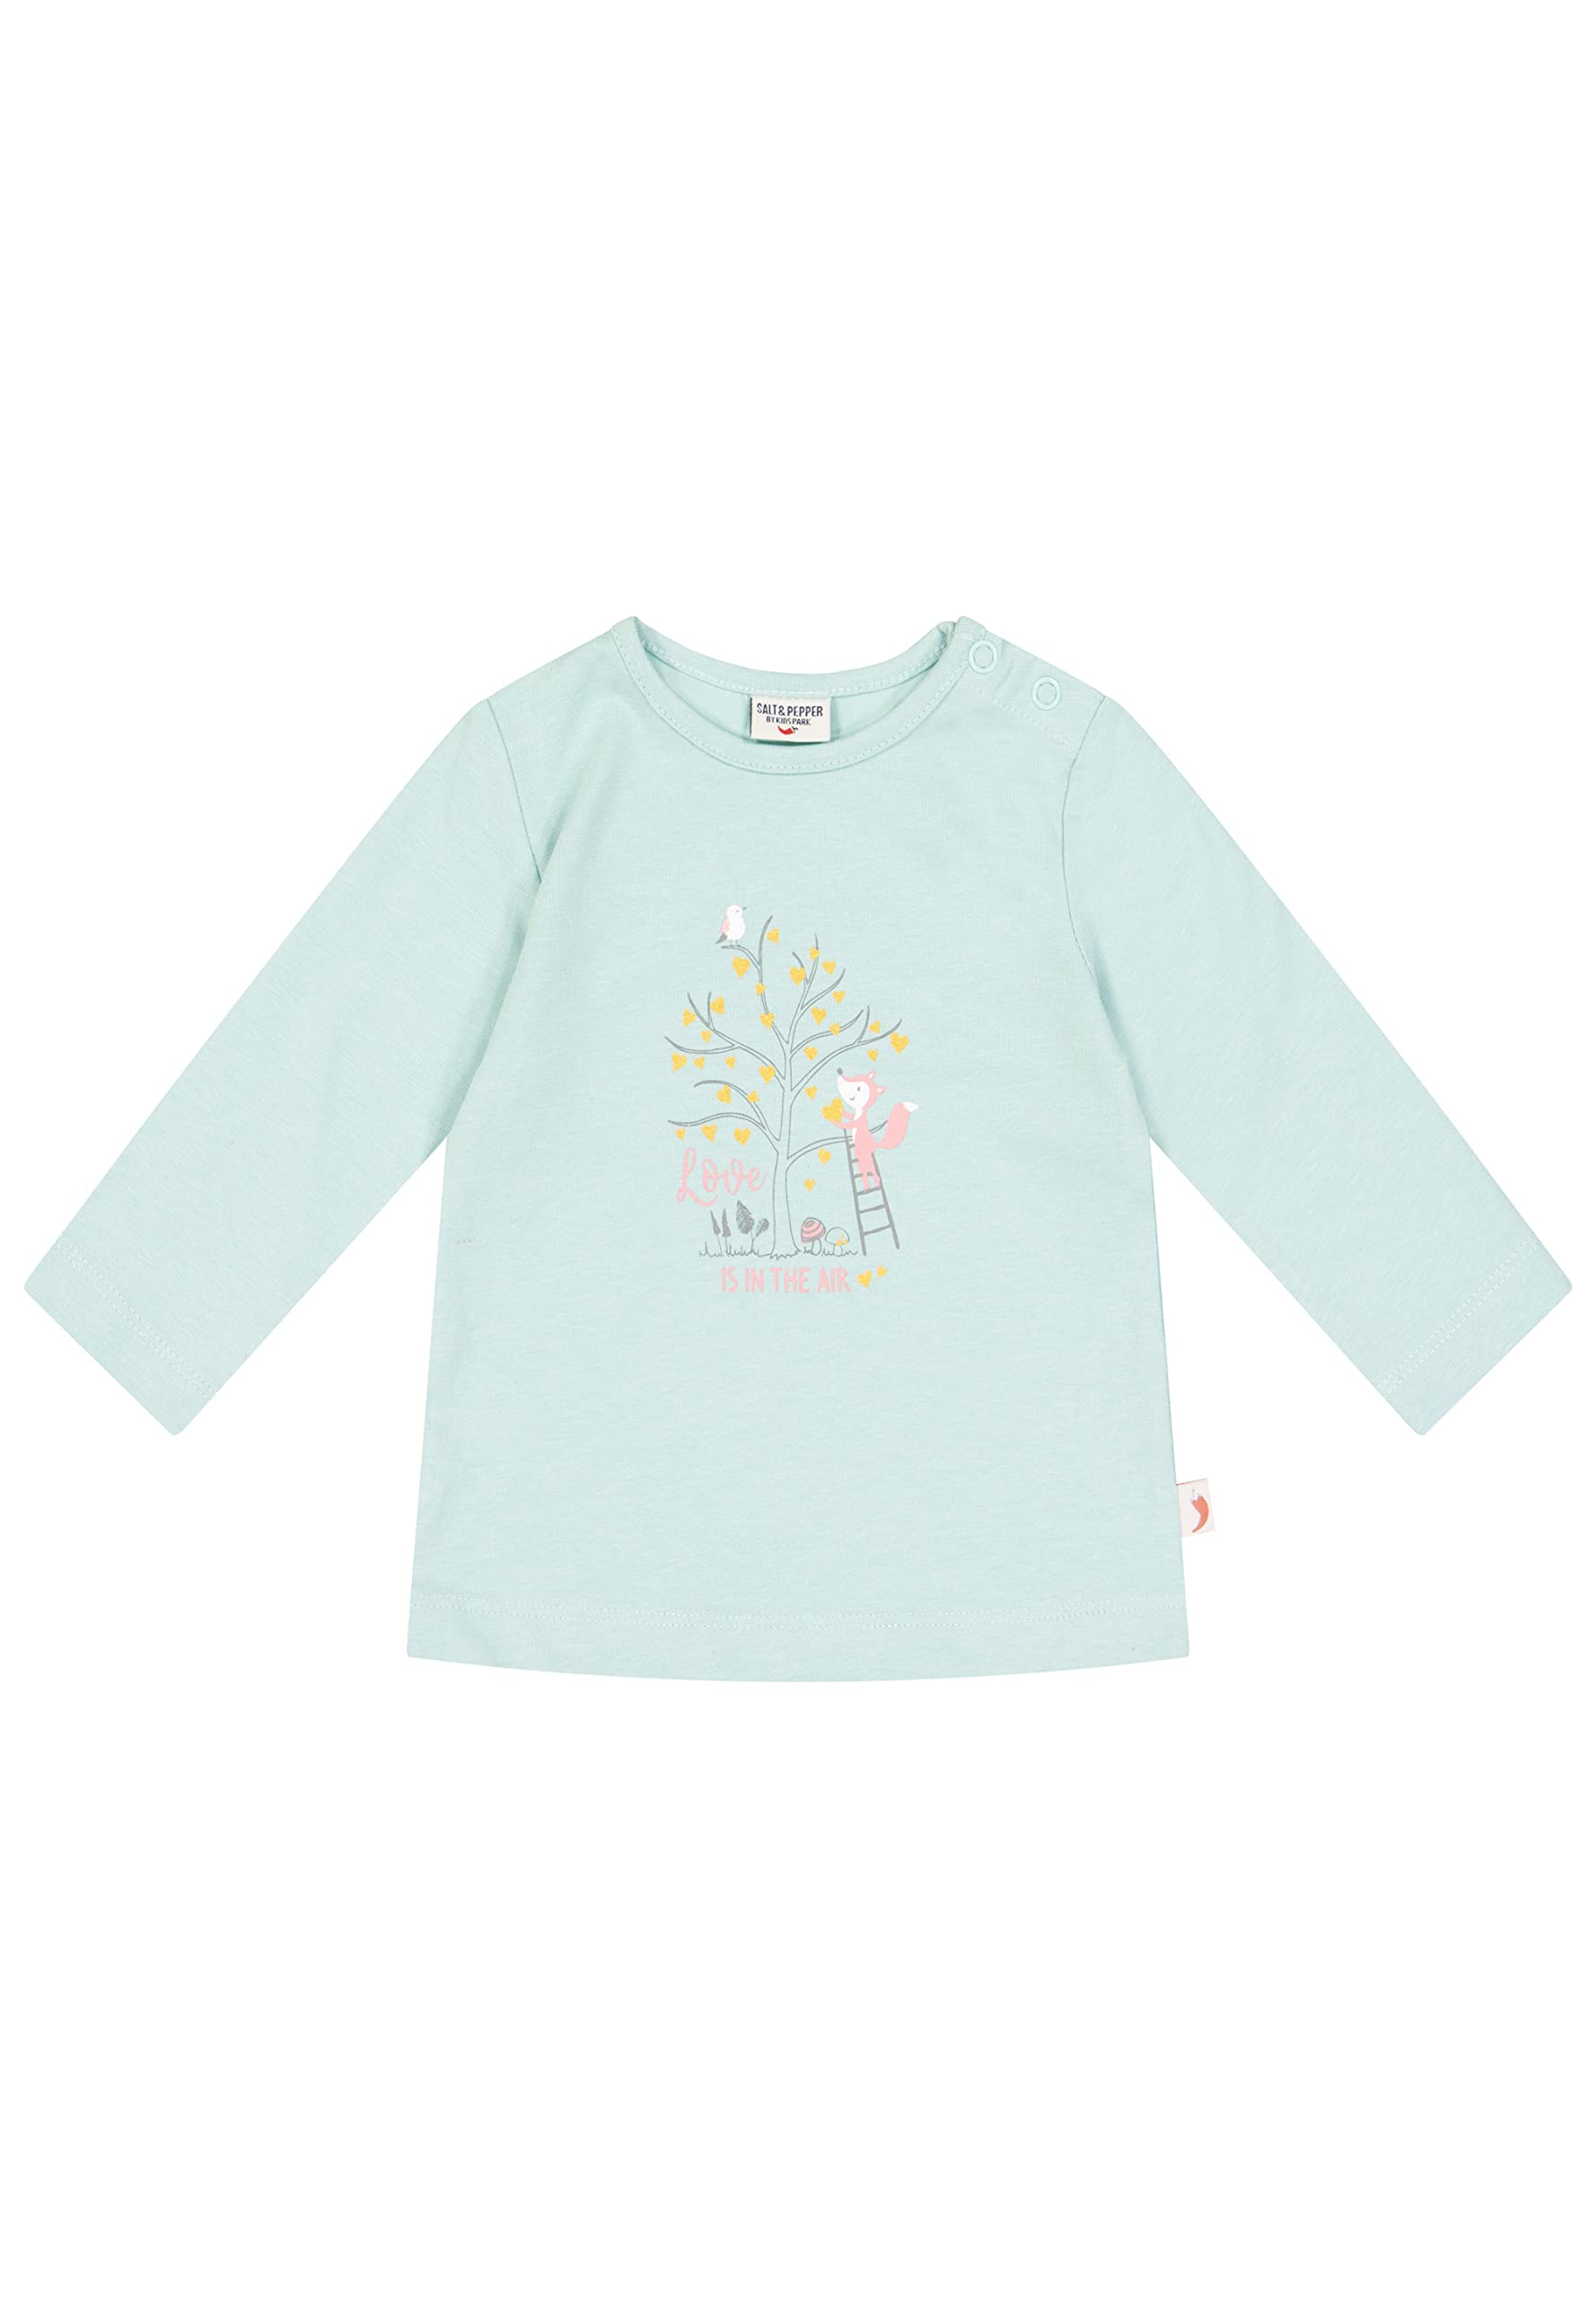 SALT AND PEPPER Baby - Mädchen Langarmshirt Love The Air aus Bio Baumwolle Baby und Kleinkind T Shirt Satz, Soft Mint, 56 EU